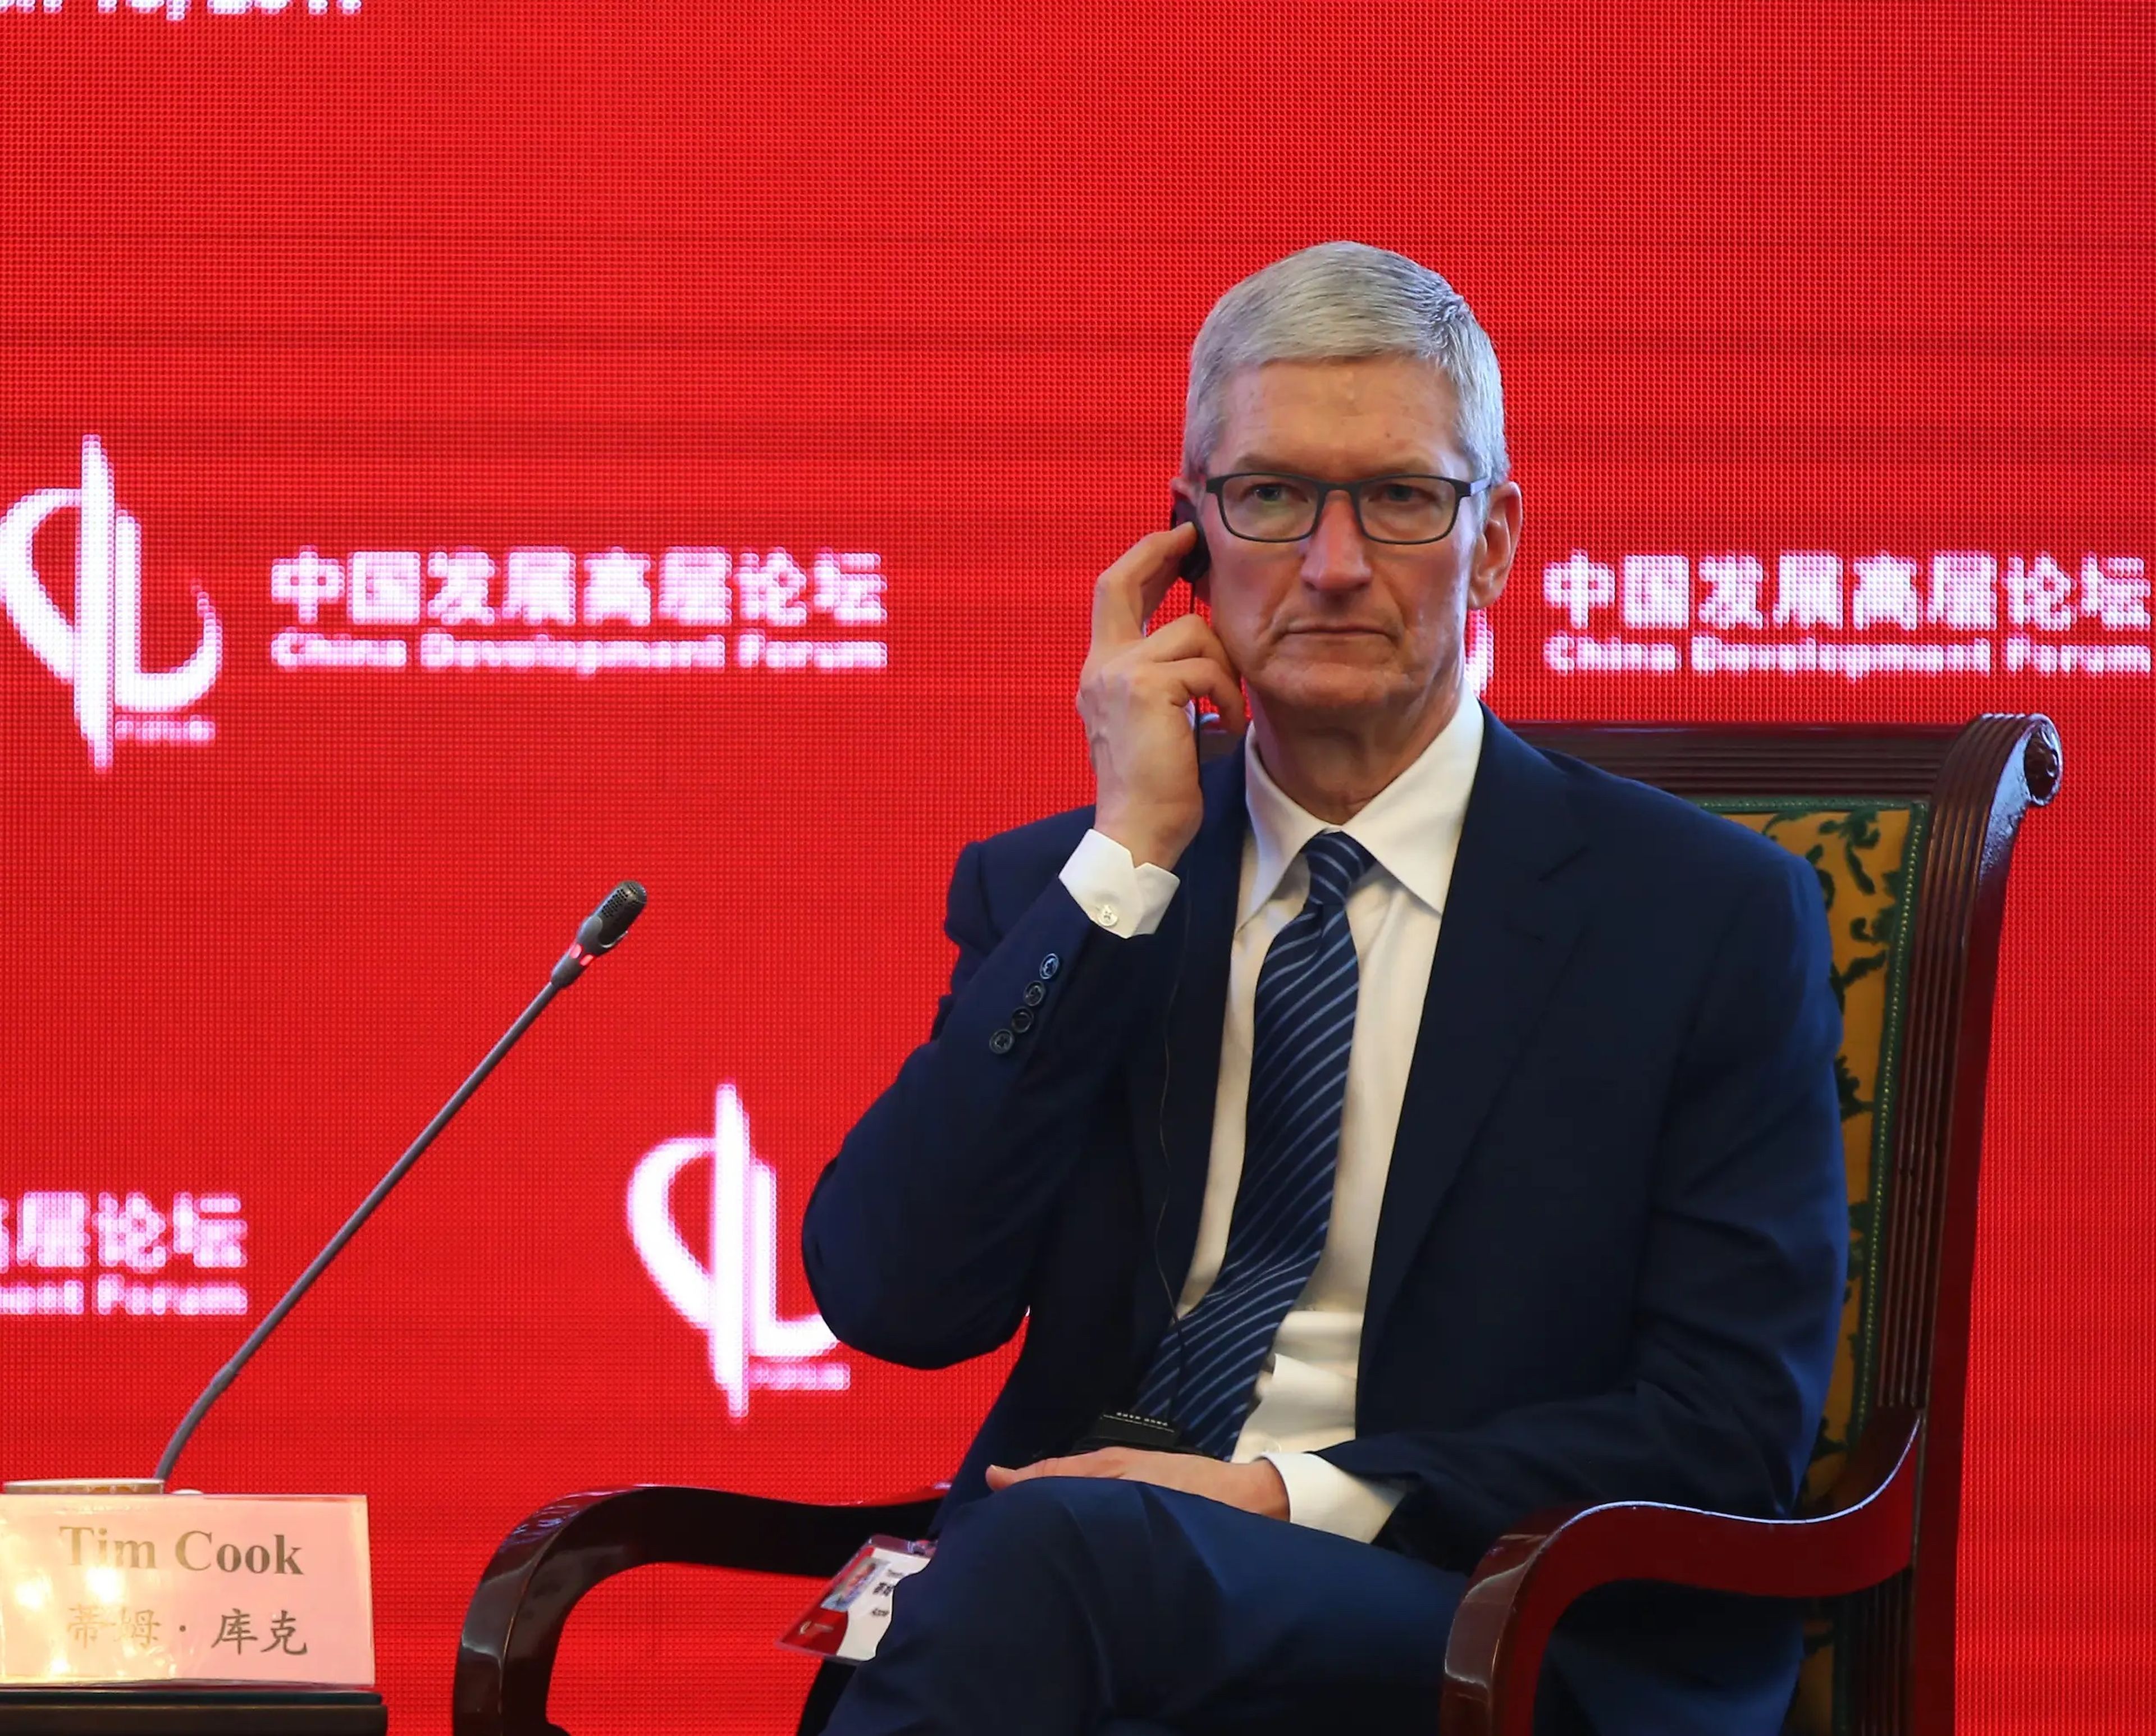 Tim Cook, CEO de Apple, durante una visita a China